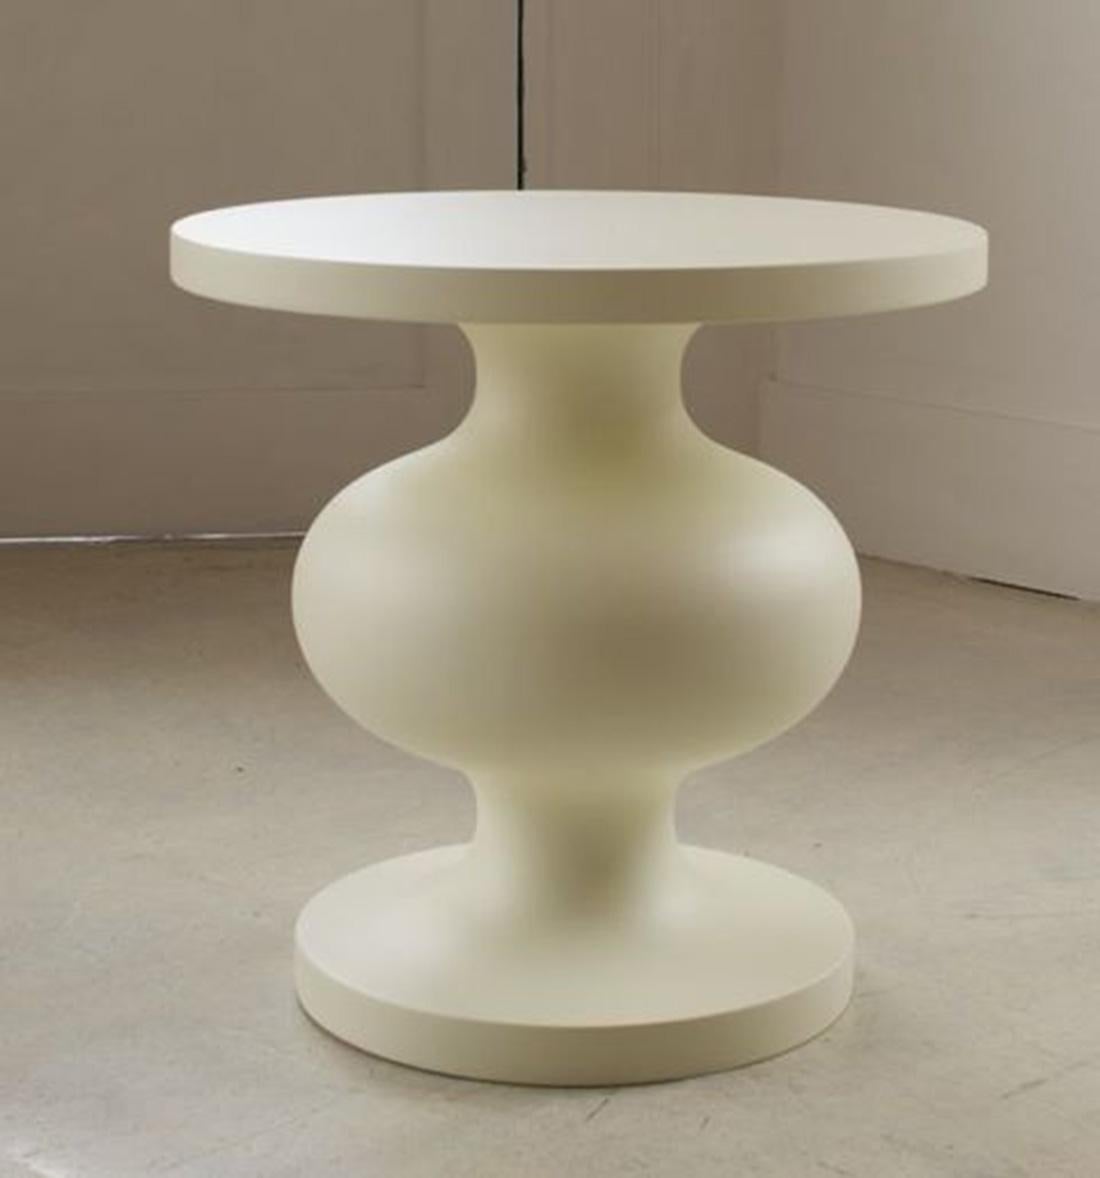 Cette table d'appoint originale, sculpturale et artisanale Design/One est un exemple raffiné de design moderne organique du 21e siècle. Sa forme sensuelle et ses proportions parfaites rappellent les sculptures minimales du XXe siècle de Jean Arp.